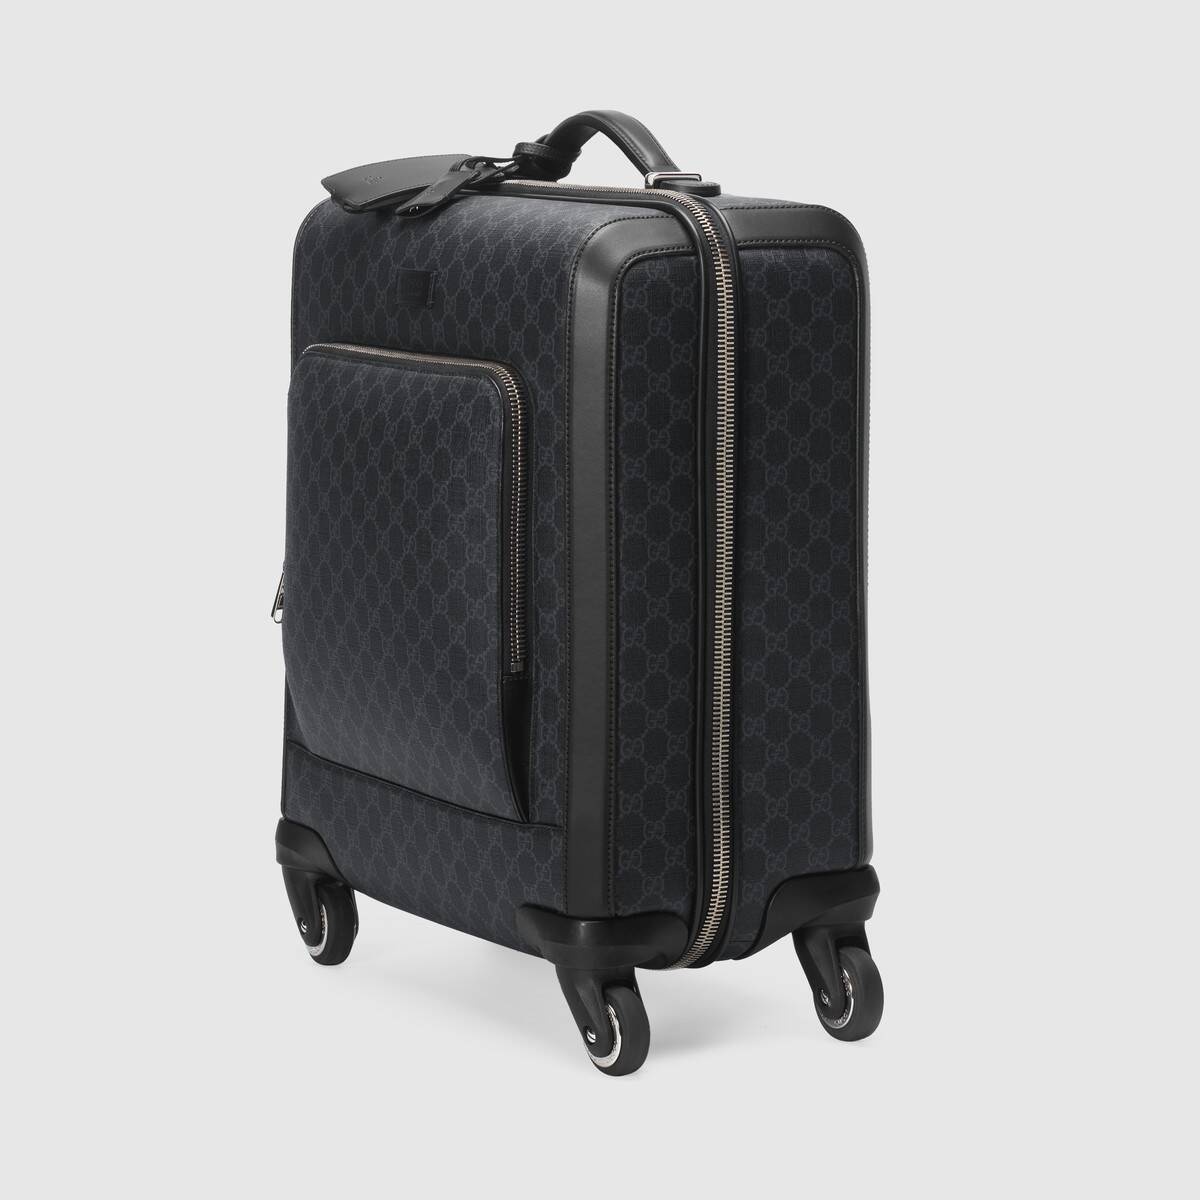 Gran Turismo GG Supreme suitcase - 2